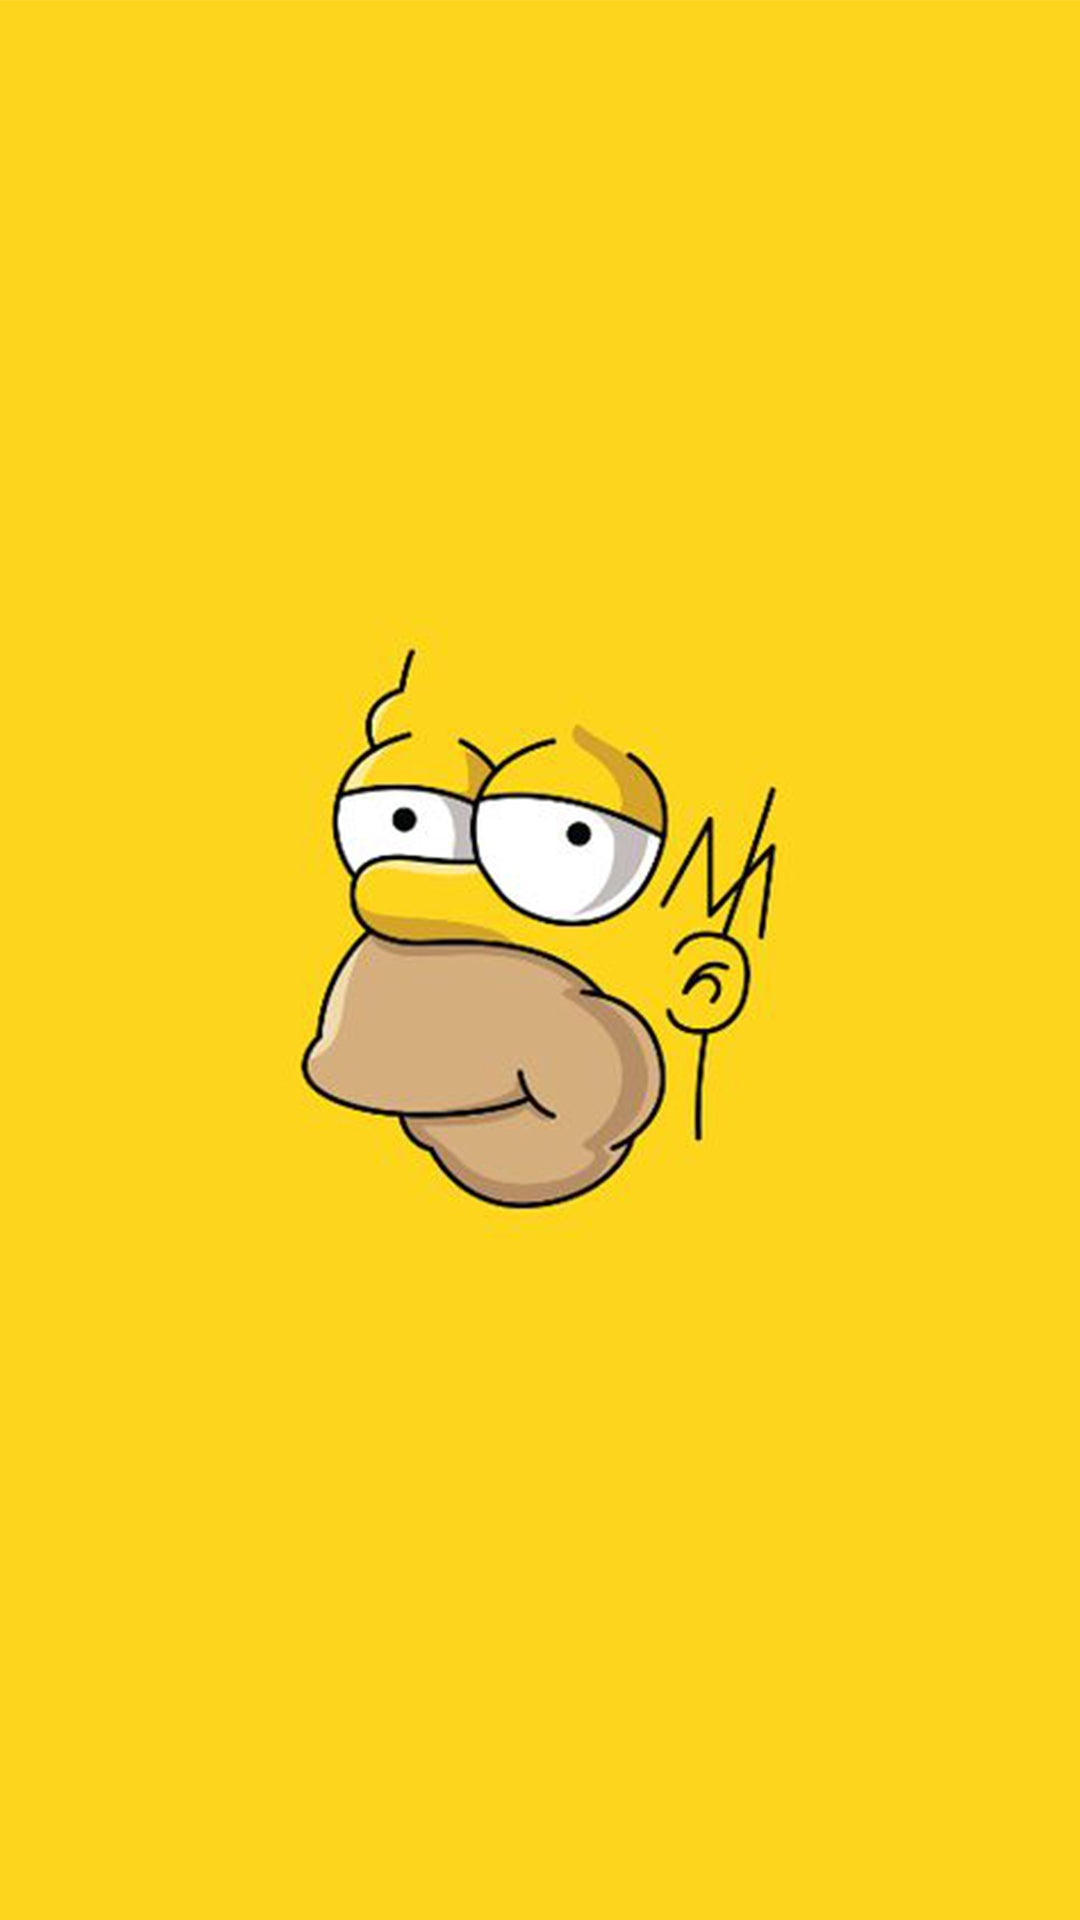 Contours du visage et de la tête d’Homer Simpson sur fond jaune.